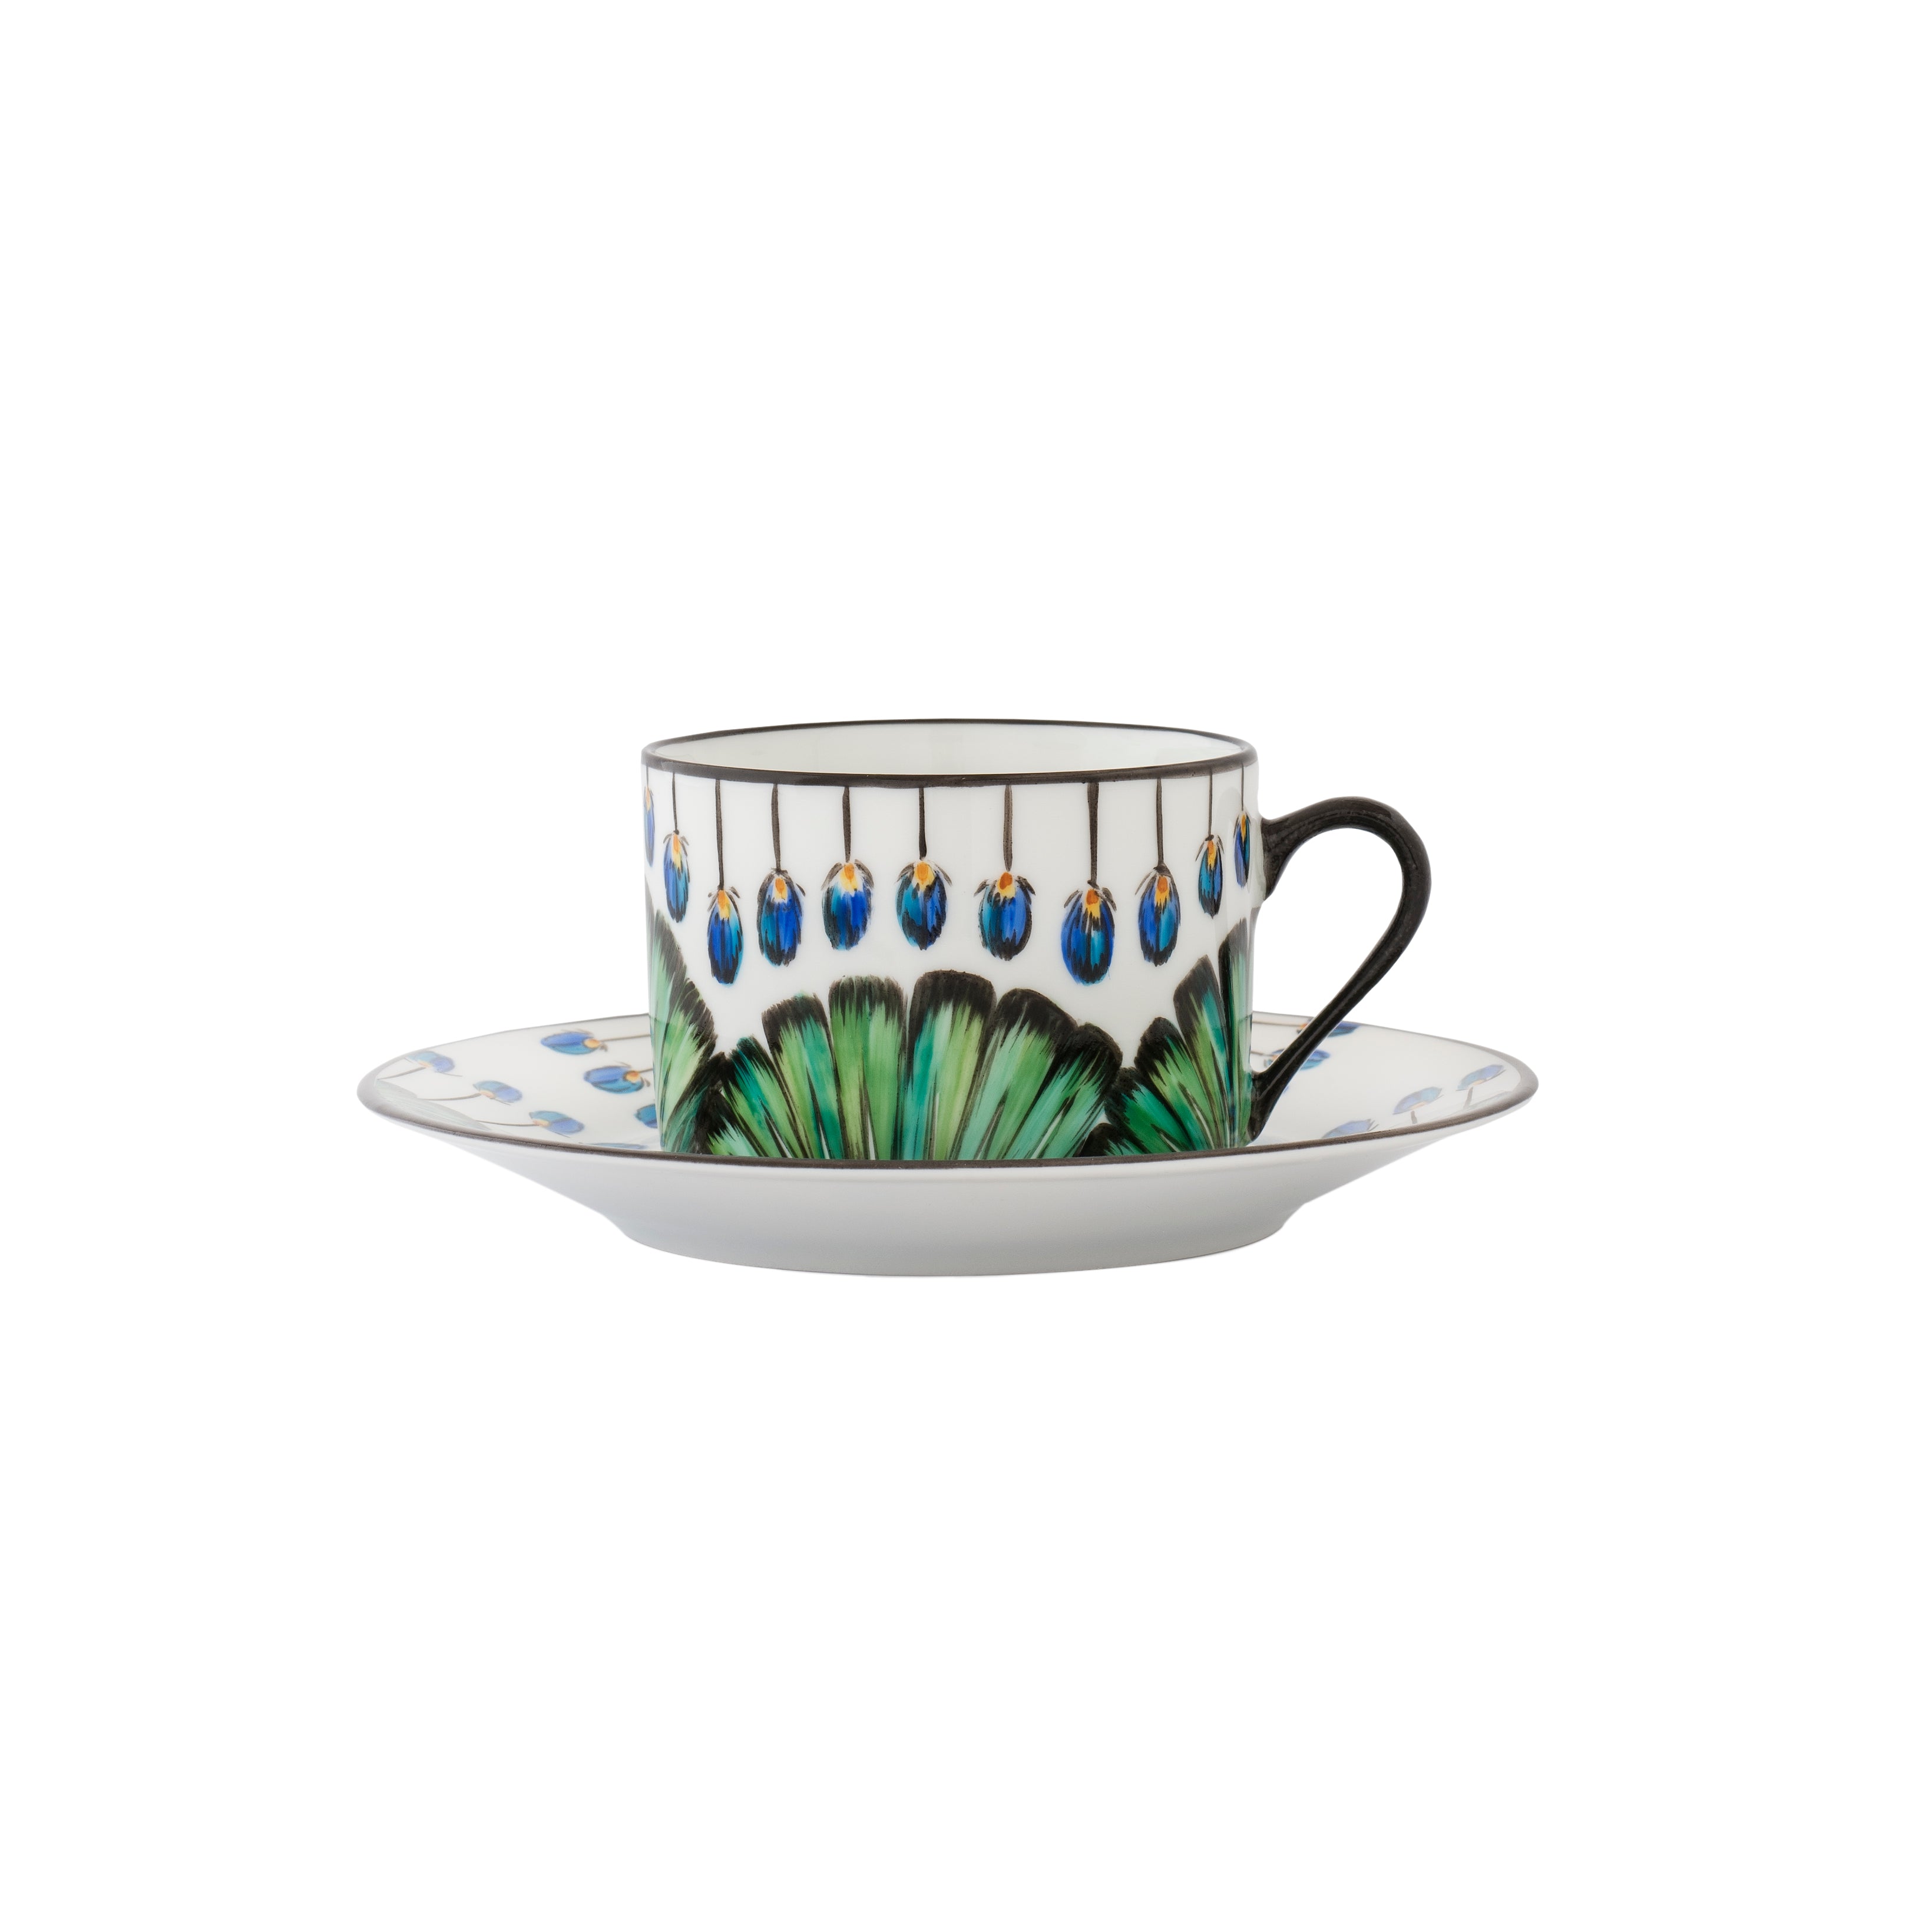 Bahia - Tea cup and saucer
